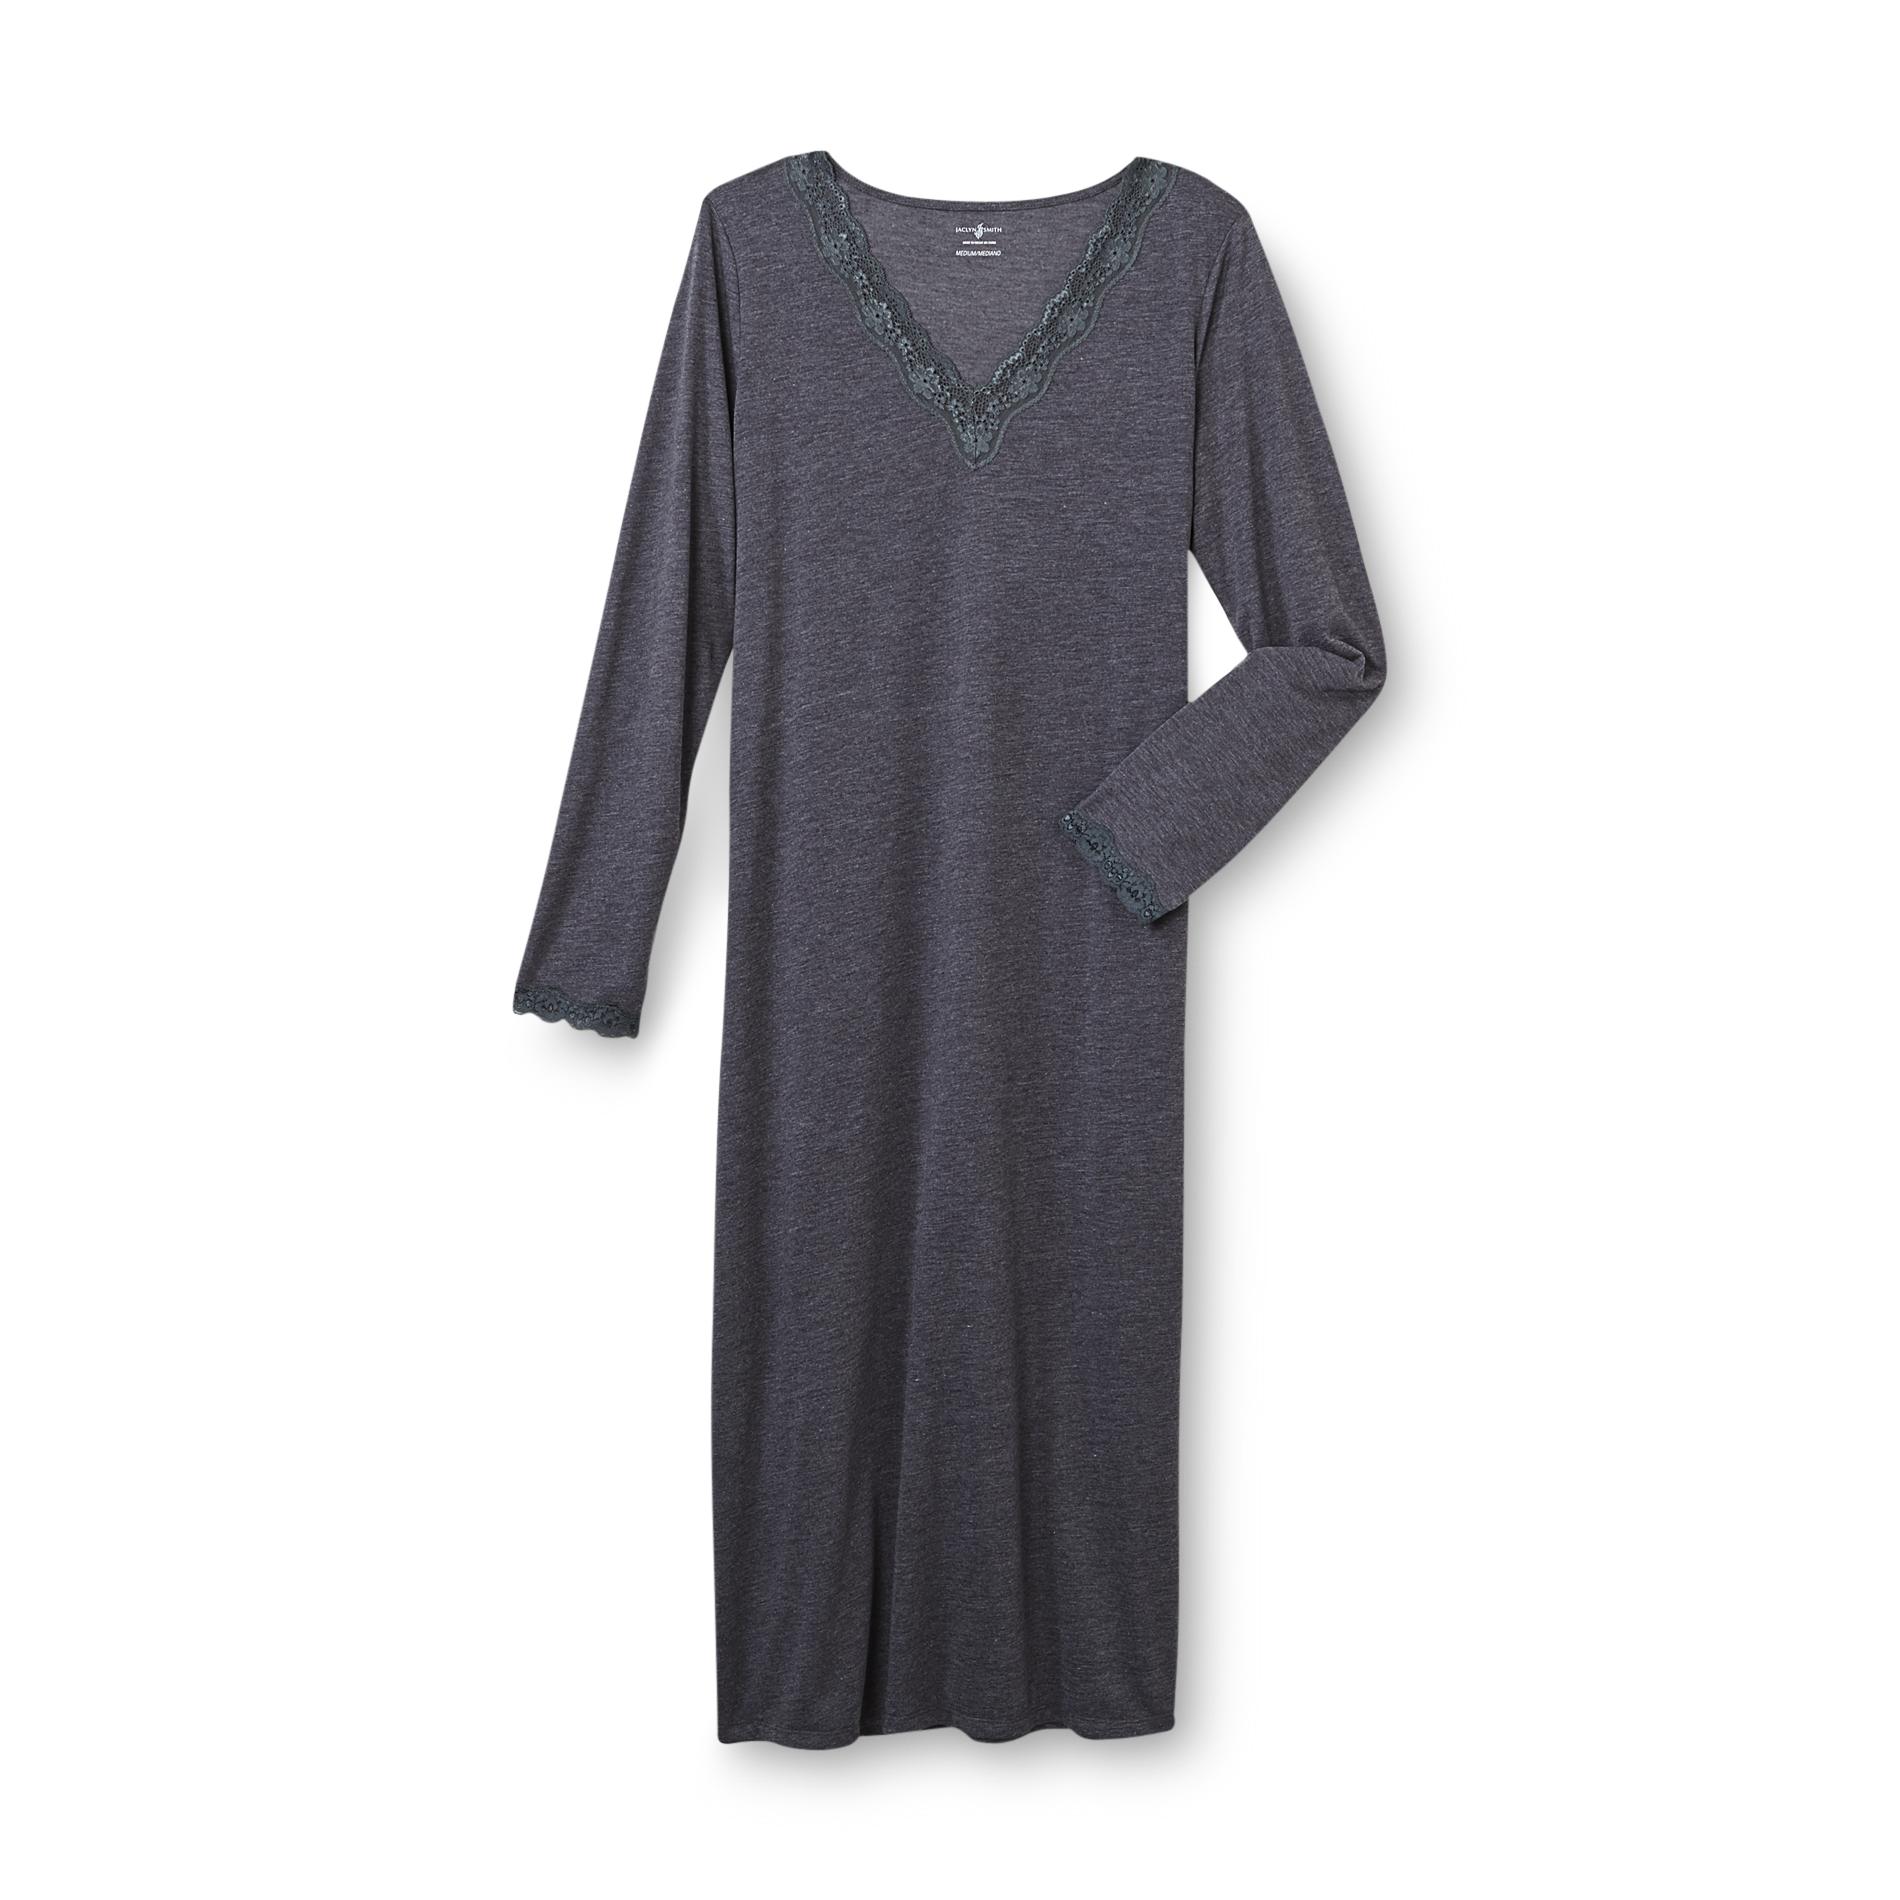 Jaclyn Smith Women's Knit Nightgown